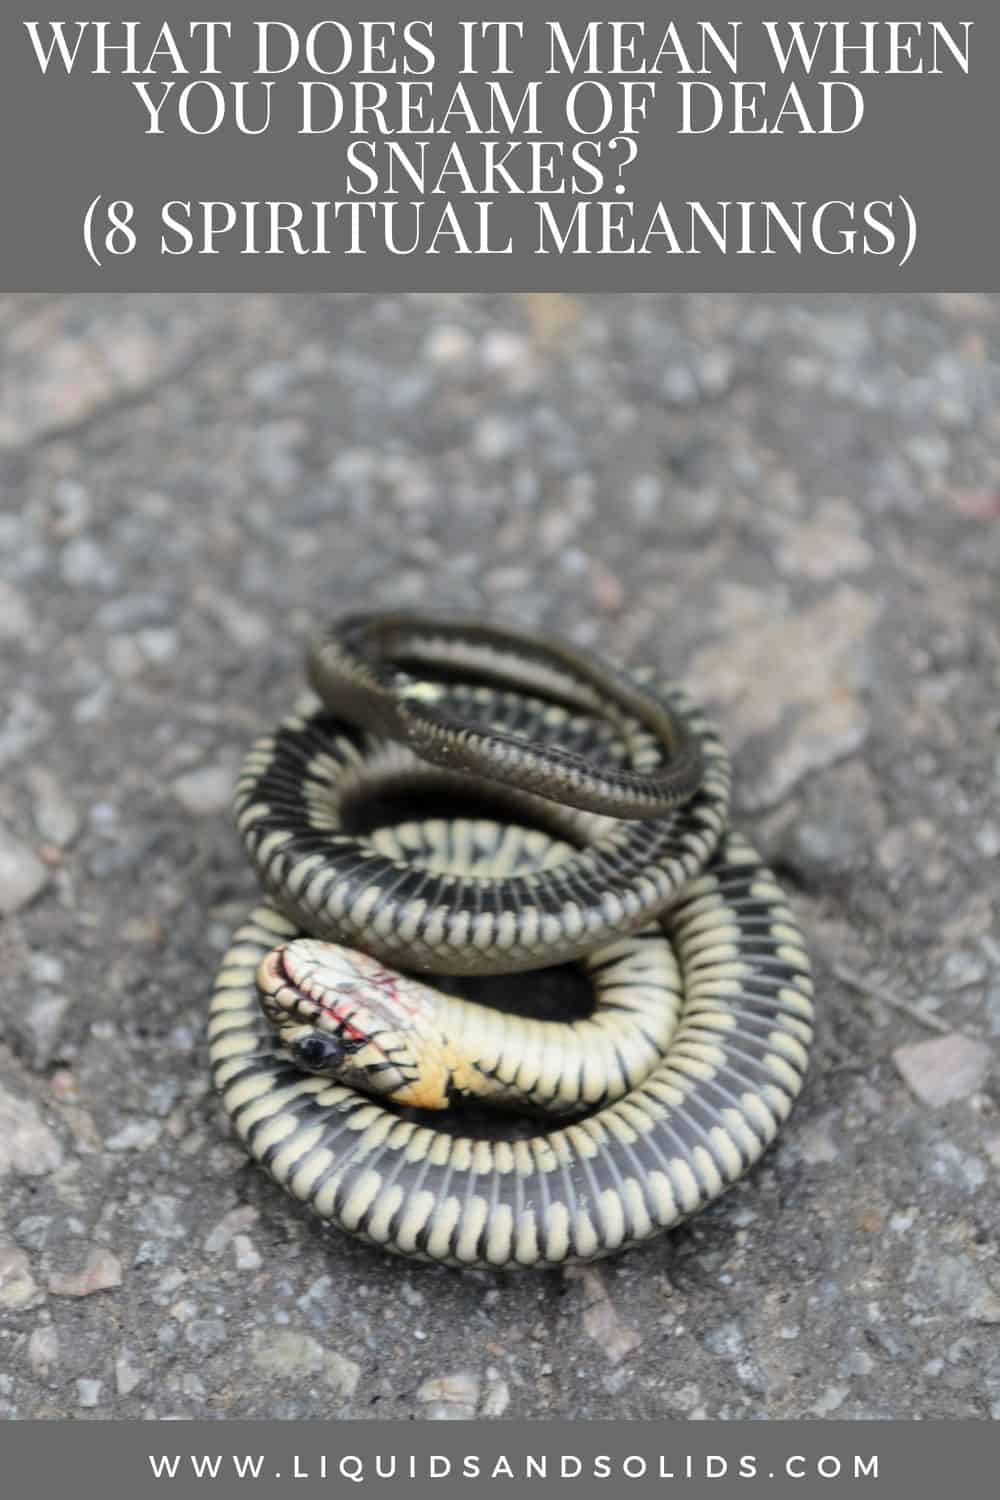  Mit jelent, ha halott kígyókról álmodsz? (8 spirituális jelentés)